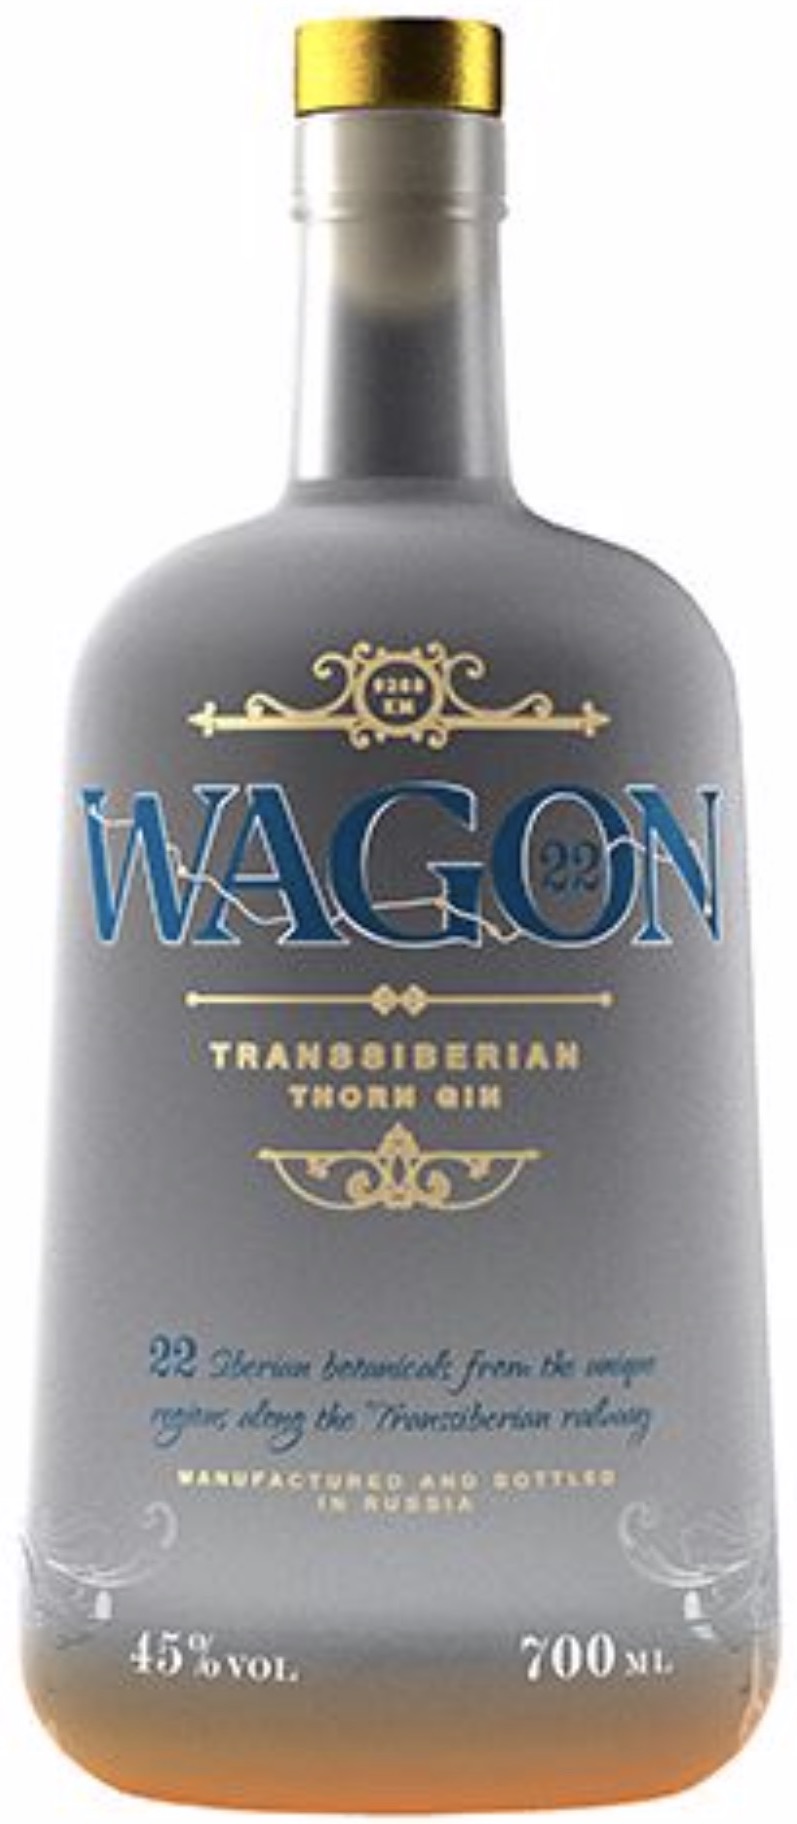 Wagon 22 Transsiberian Gin 45% vol. 0,7L